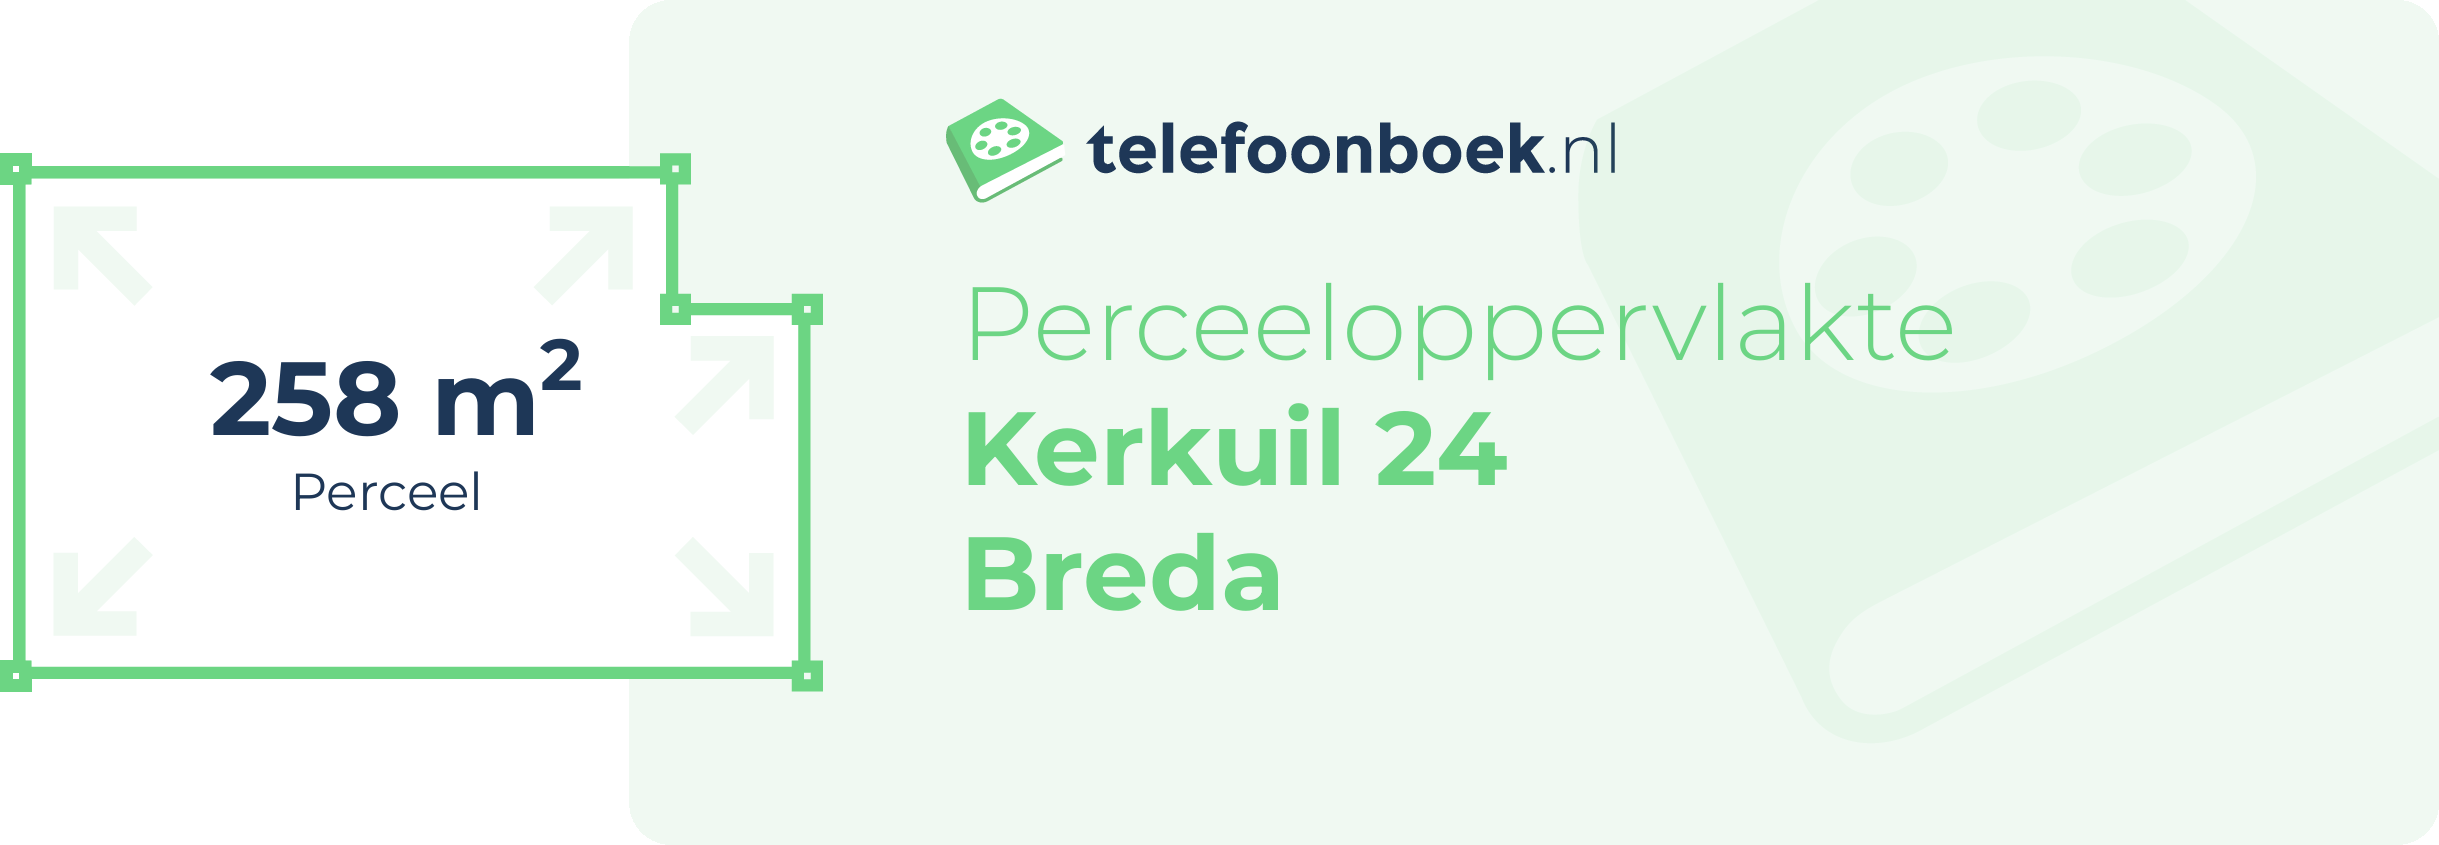 Perceeloppervlakte Kerkuil 24 Breda